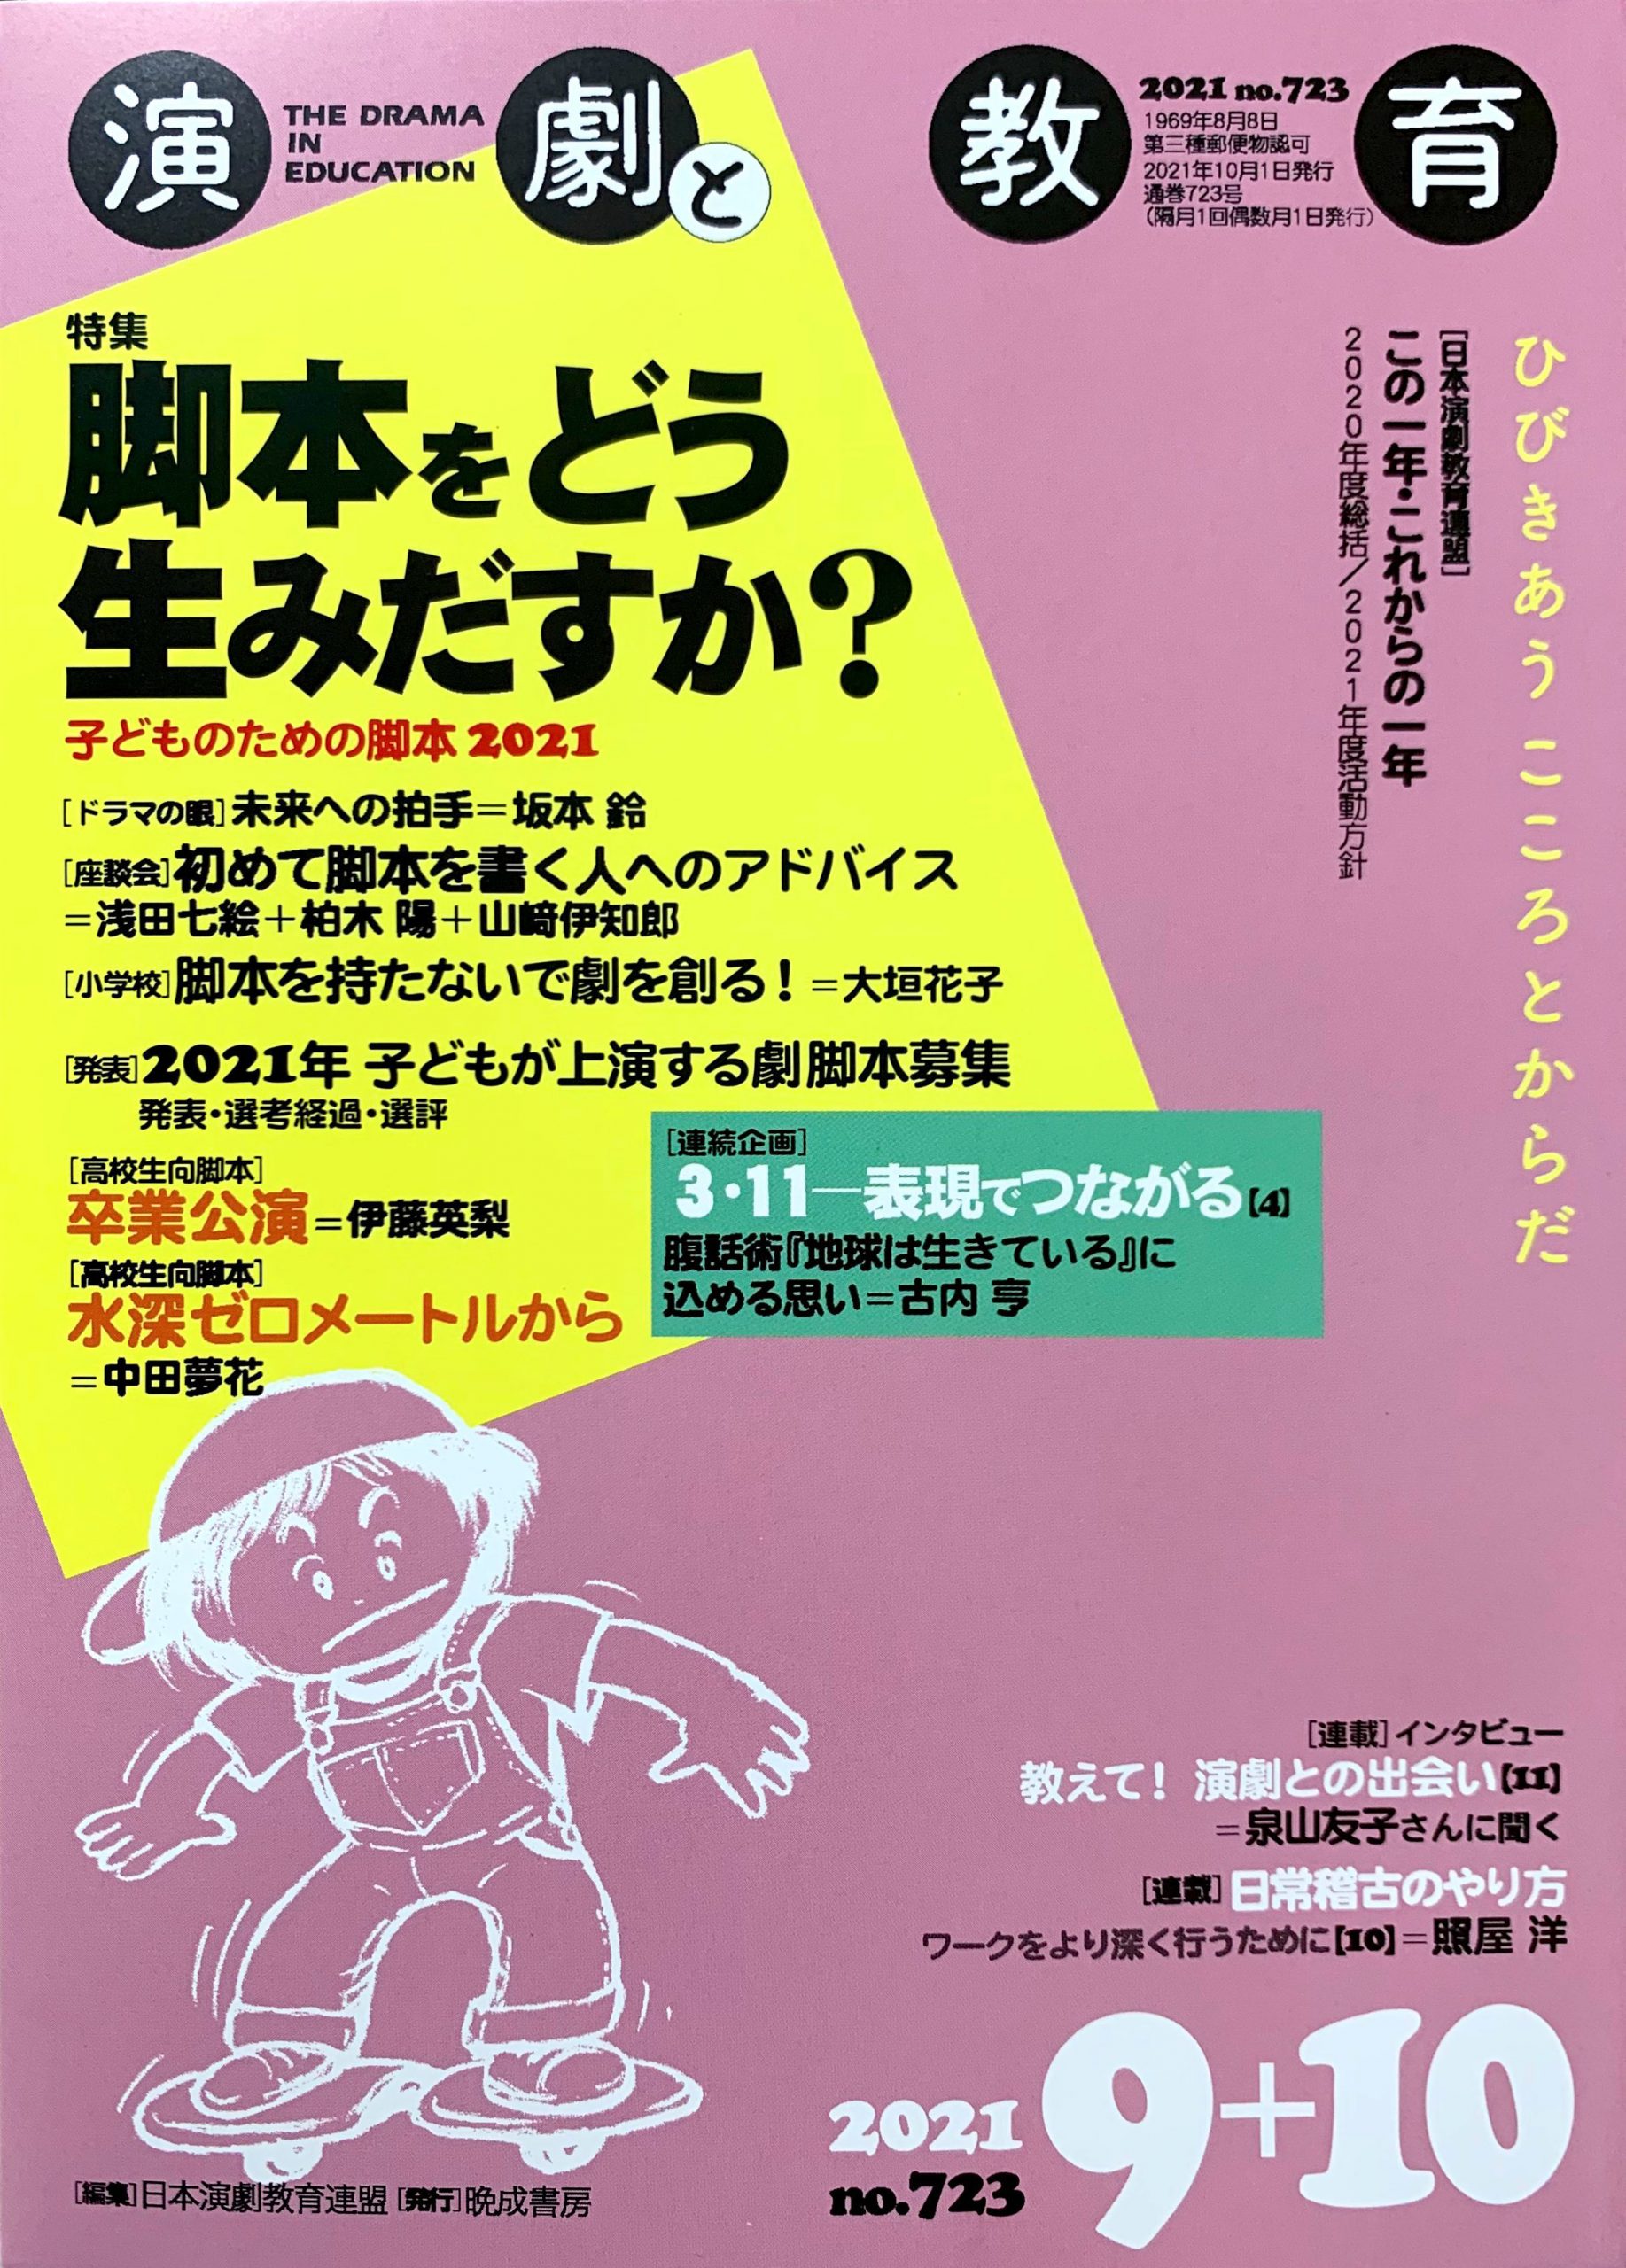 雑誌『演劇と教育』 – 一般社団法人 日本演劇教育連盟